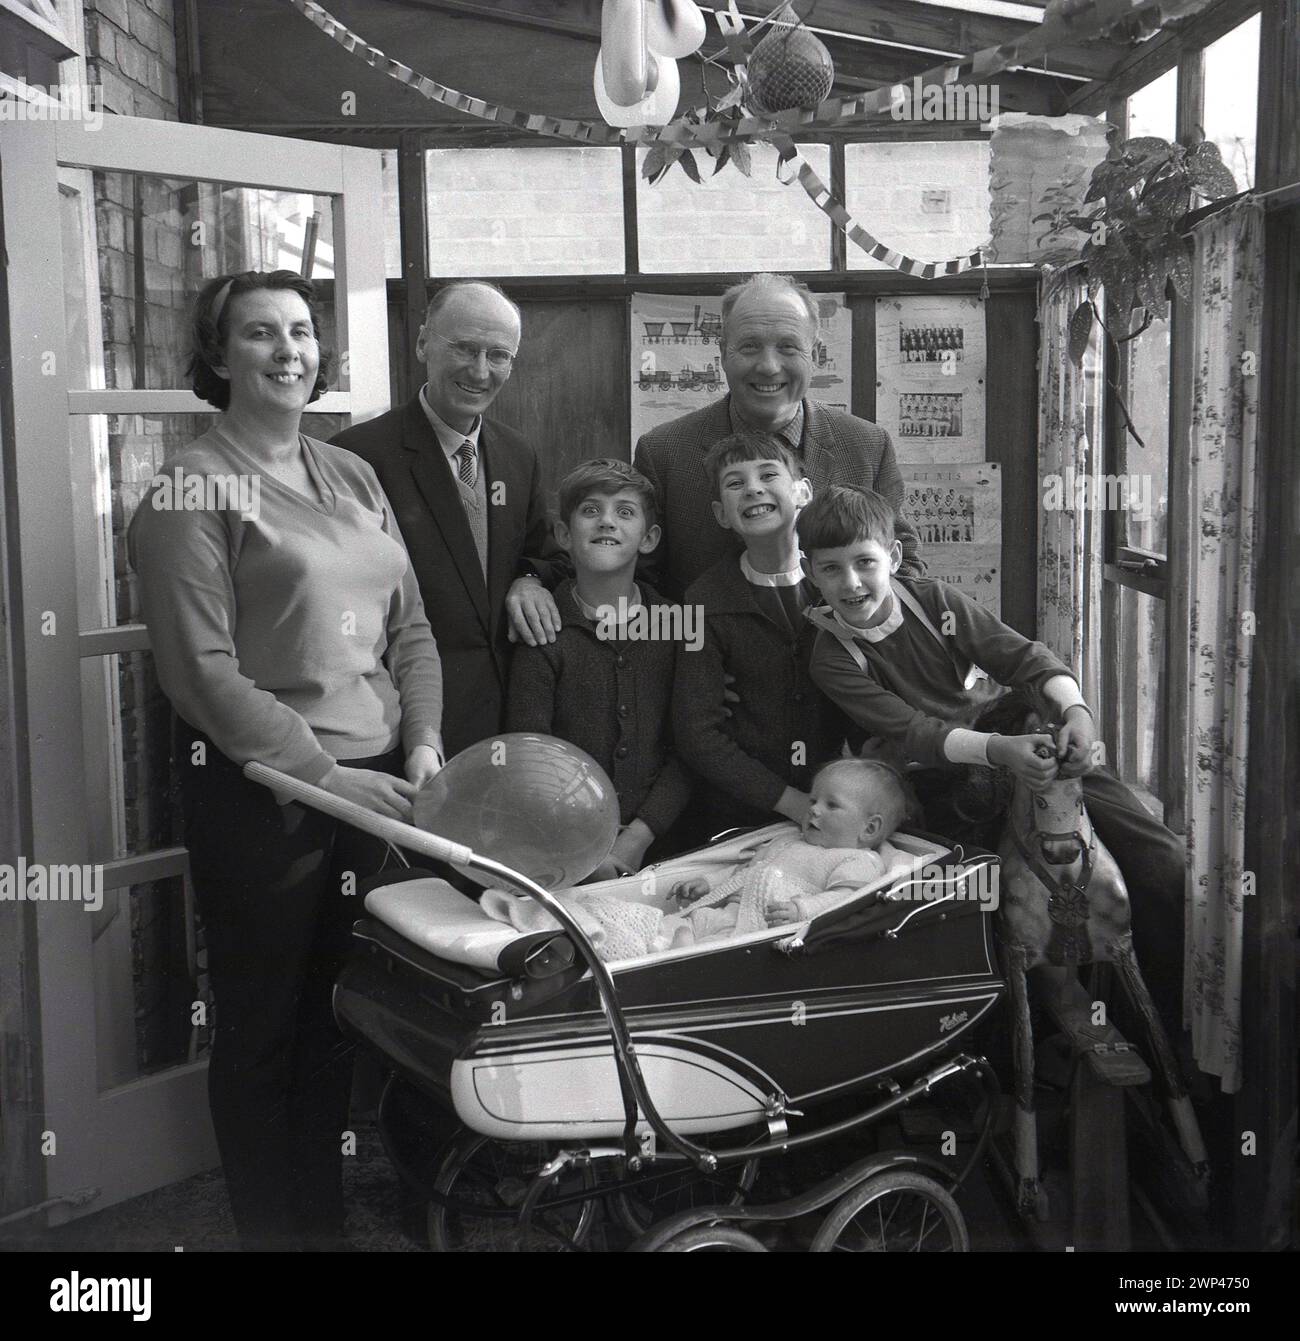 Années 1960, historique, grands sourires tout autour comme une famille debout pour une photo à l'intérieur d'un arrière-maison penché avec un enfant en bas âge assis dans une voiture d'entraînement construit tenant un ballon, Angleterre, Royaume-Uni. Banderole d'anniversaire au plafond. Banque D'Images